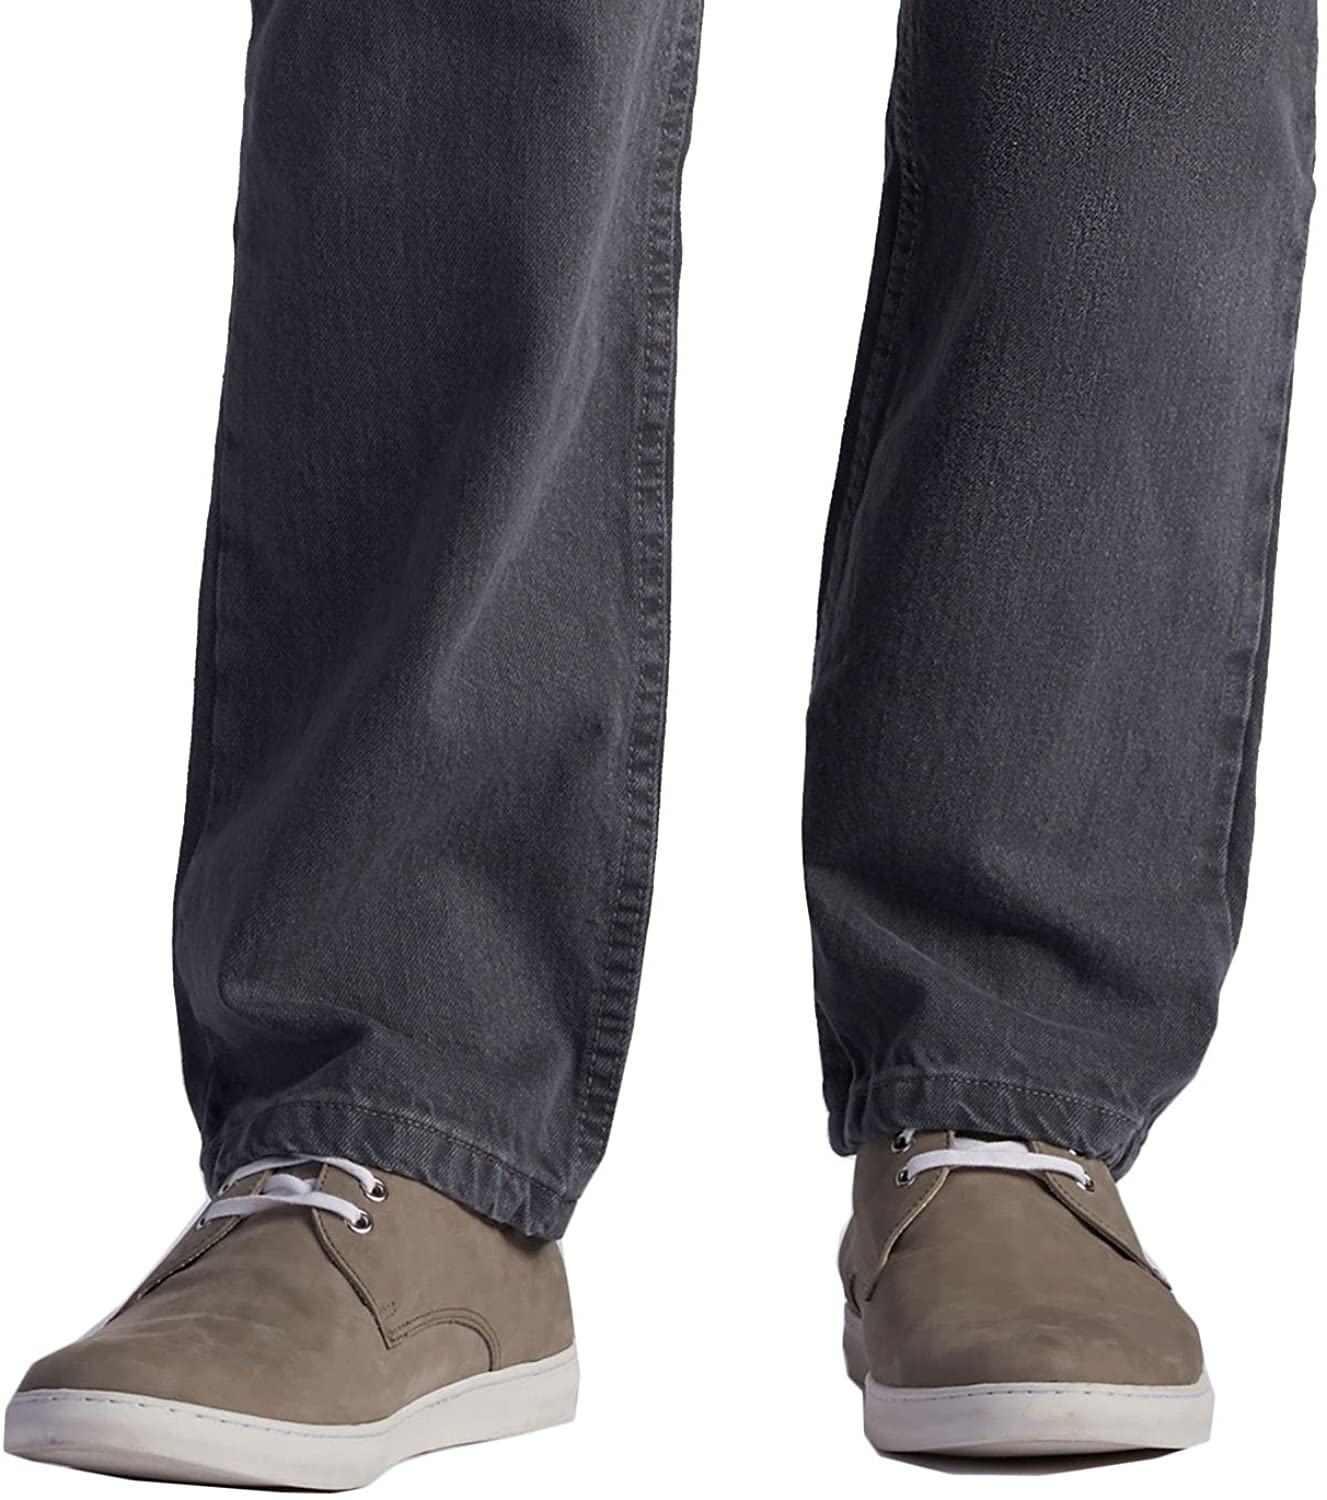 Men's Regular Fit Stretch Jeans